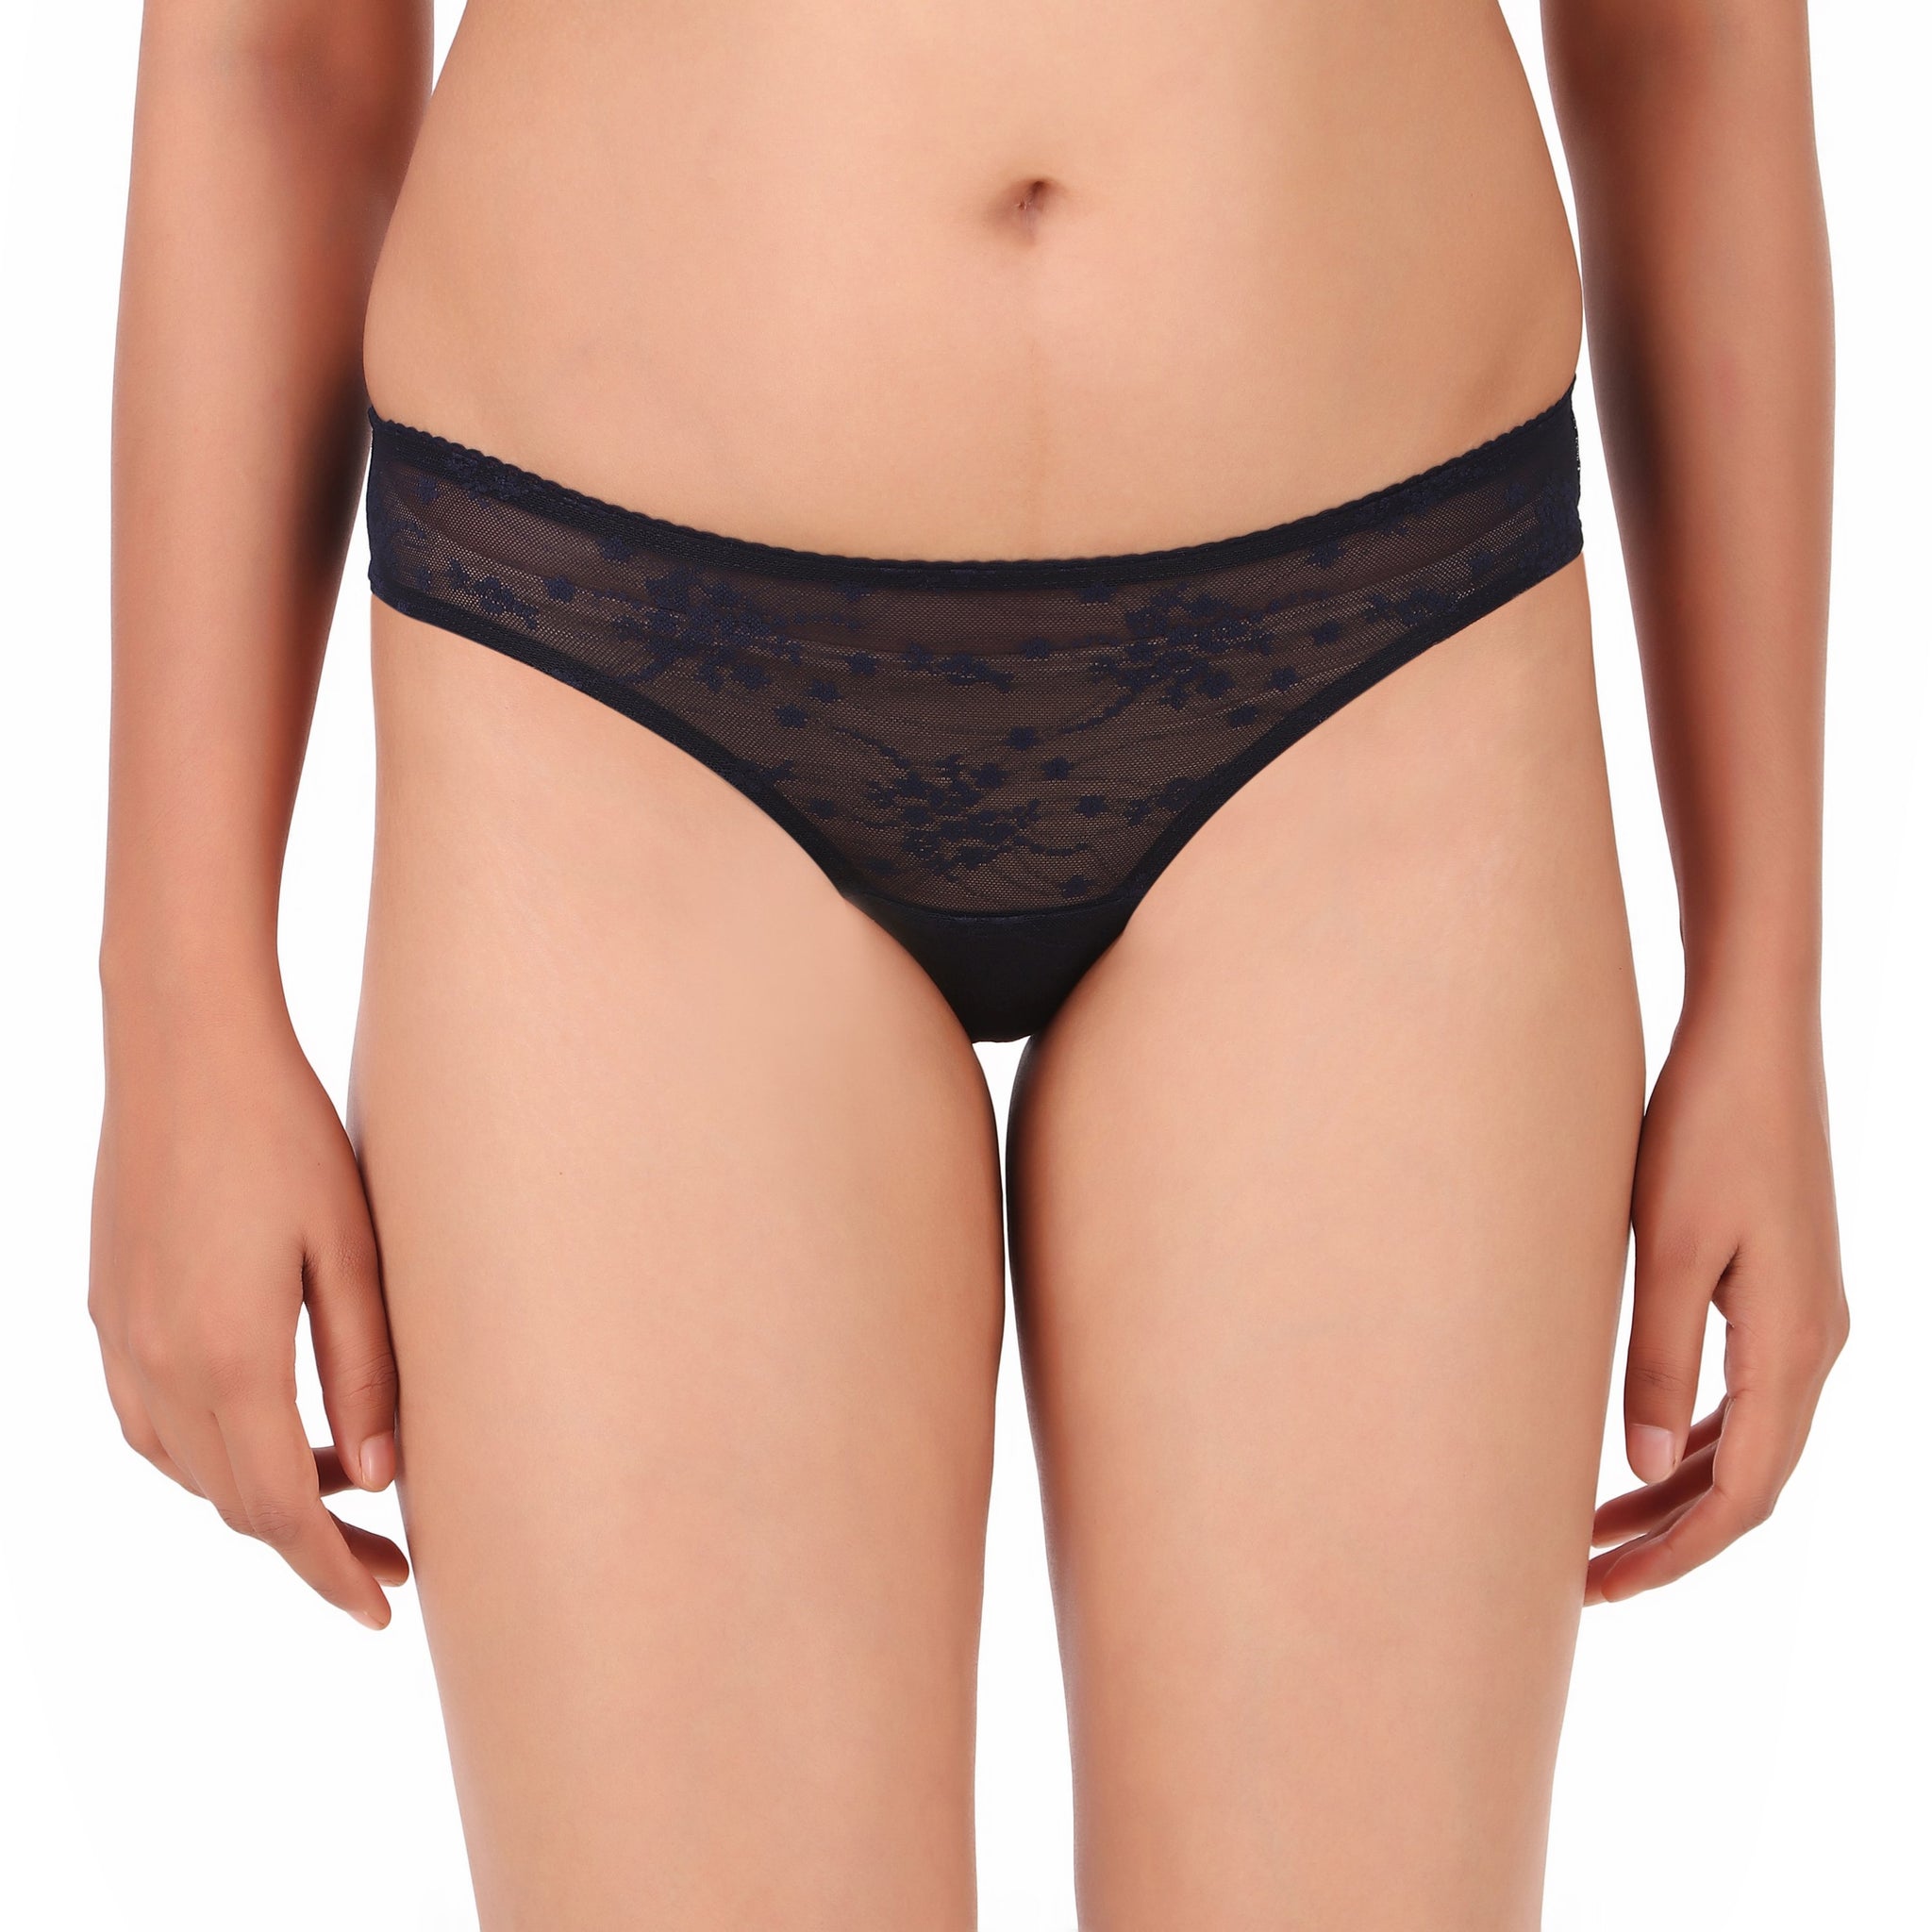 Buy Enamor Panties Online in India  Enamor Lingerie for Women Online -  Savvyy